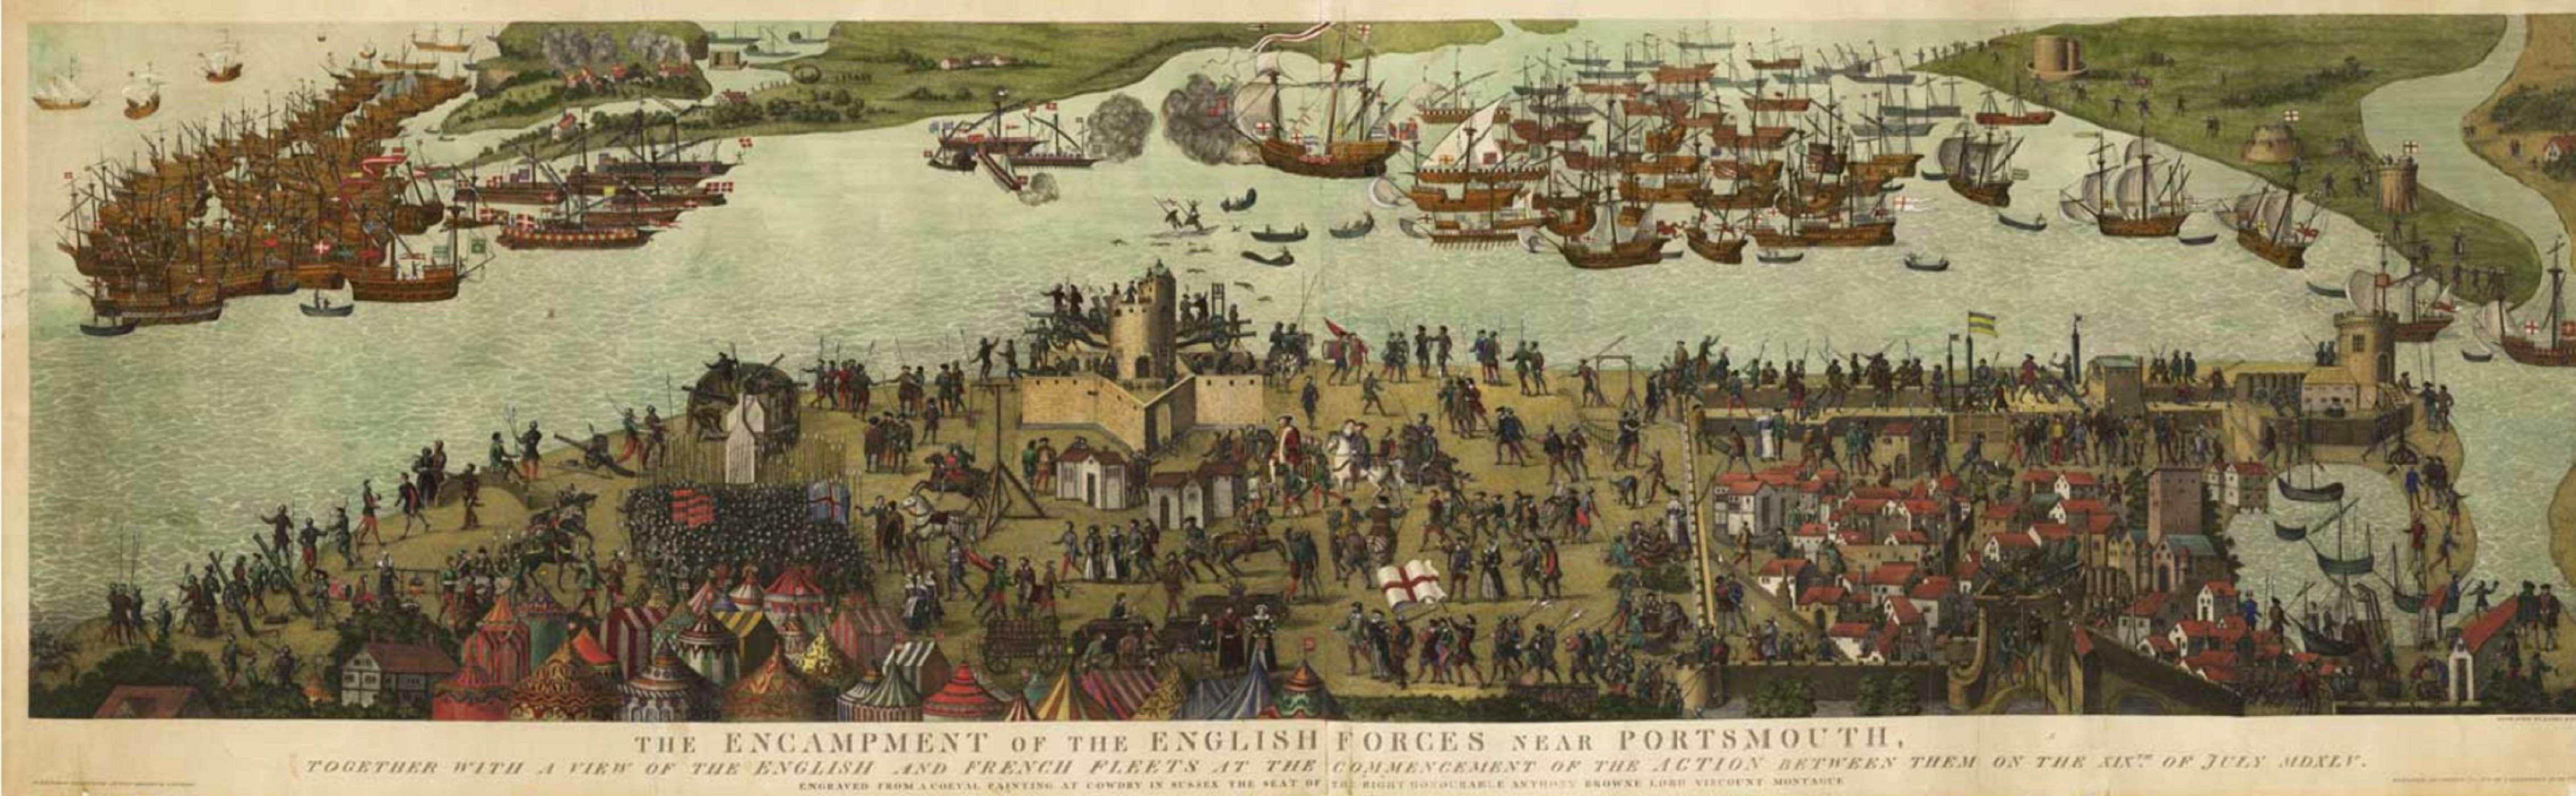 Representación del campamento inglés antes de la Batalla de Soliendo. Fuente British Library